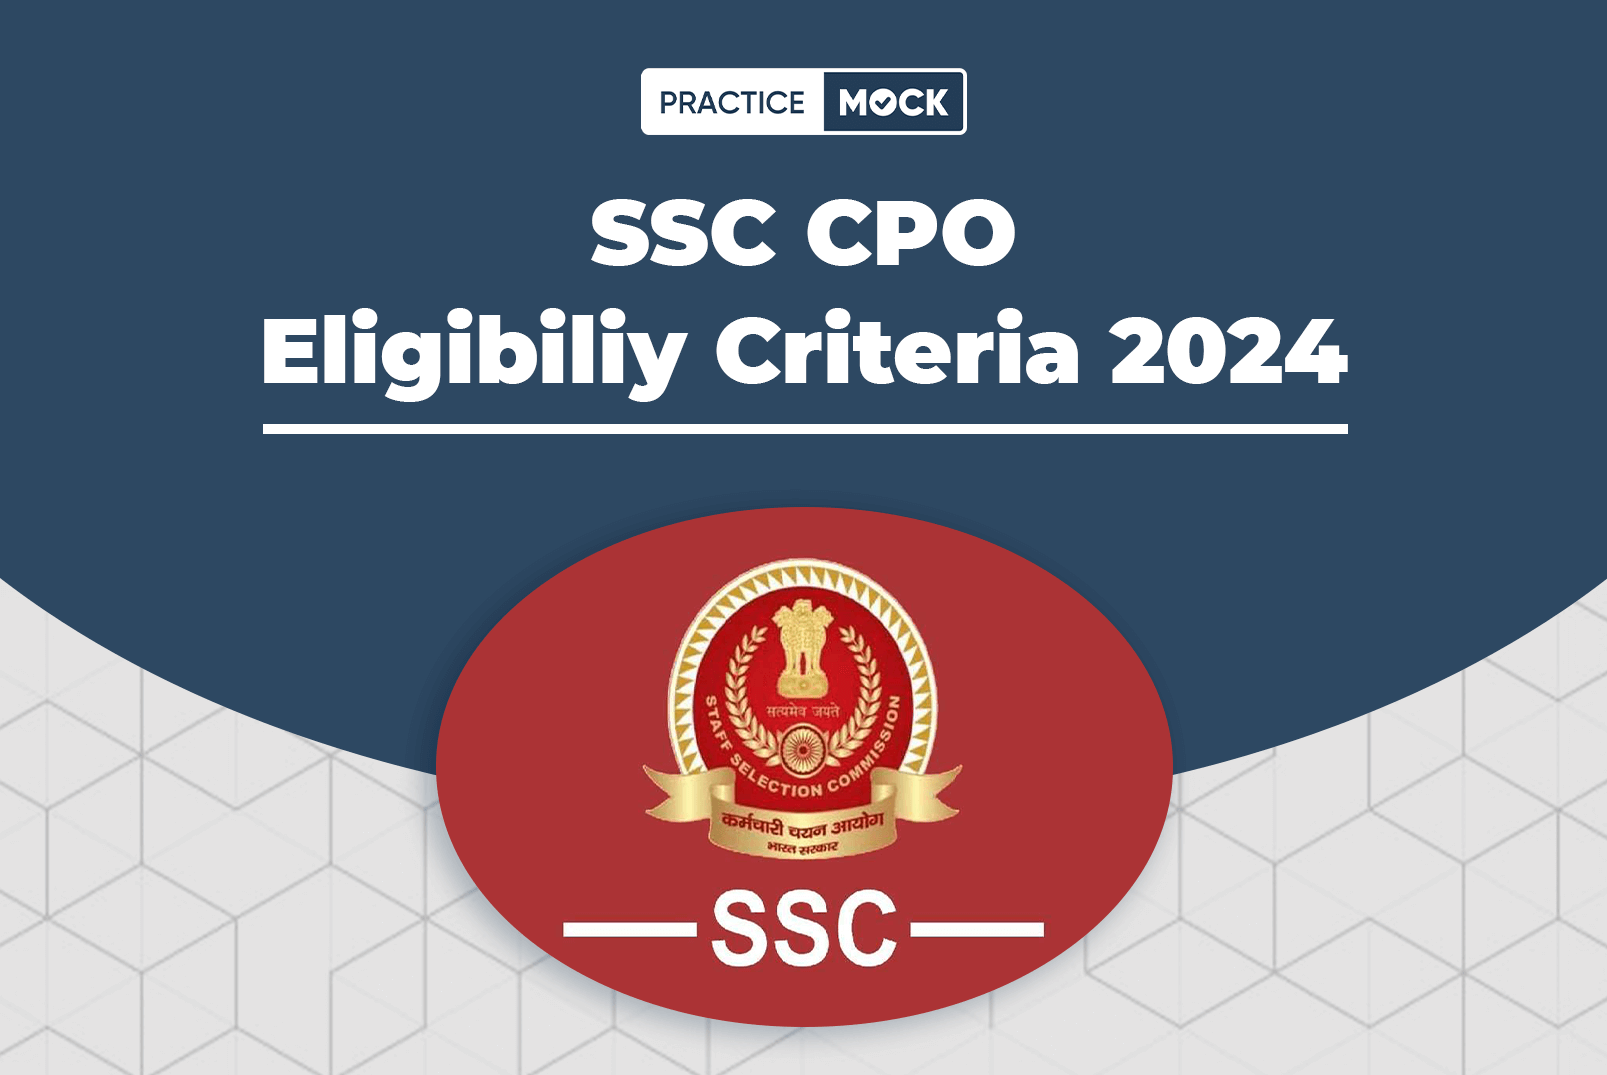 SSC CPO Eligibility Criteria 2024